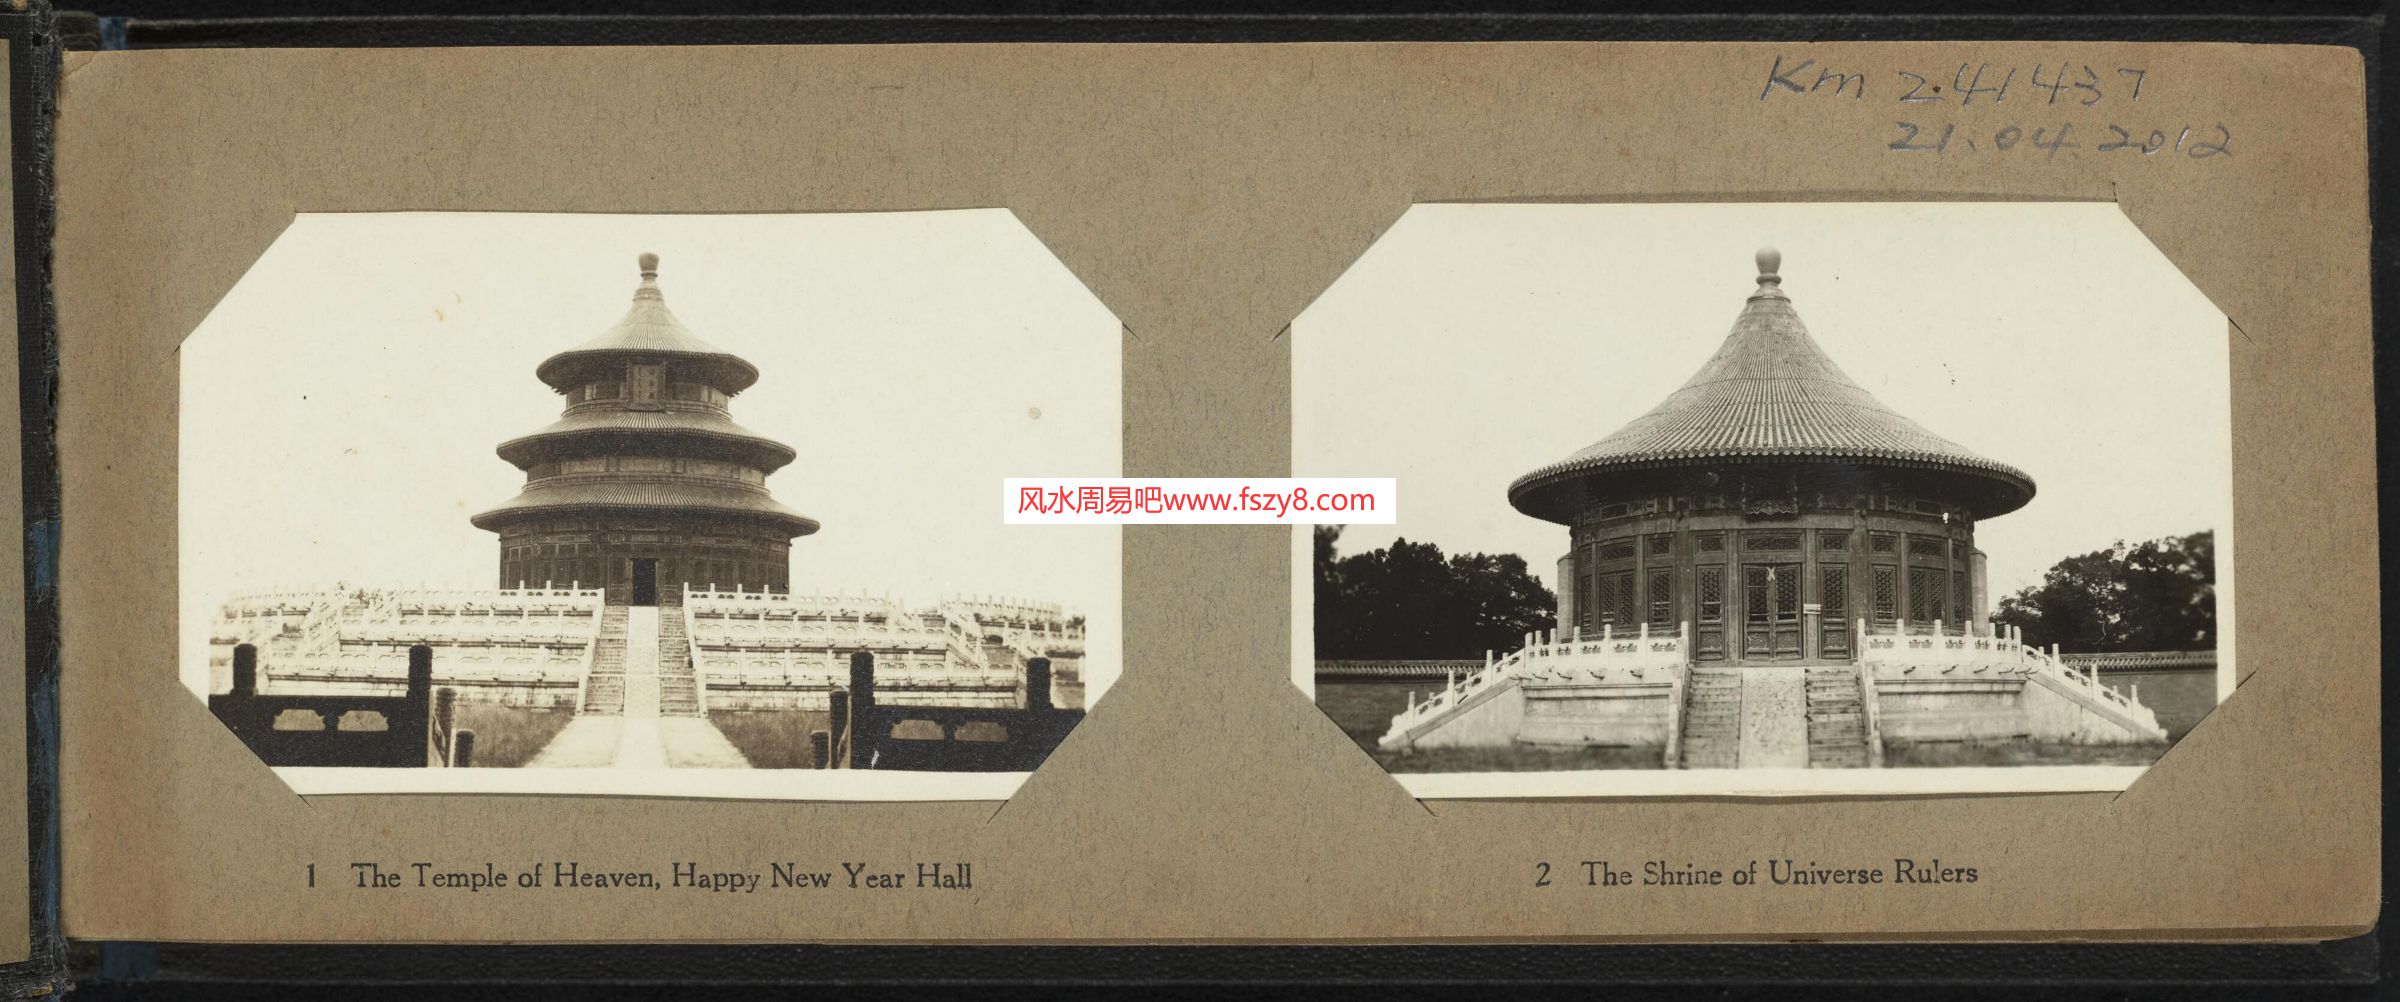 影像影像历史画册大合集57部 含二战图片史 北京影像集等